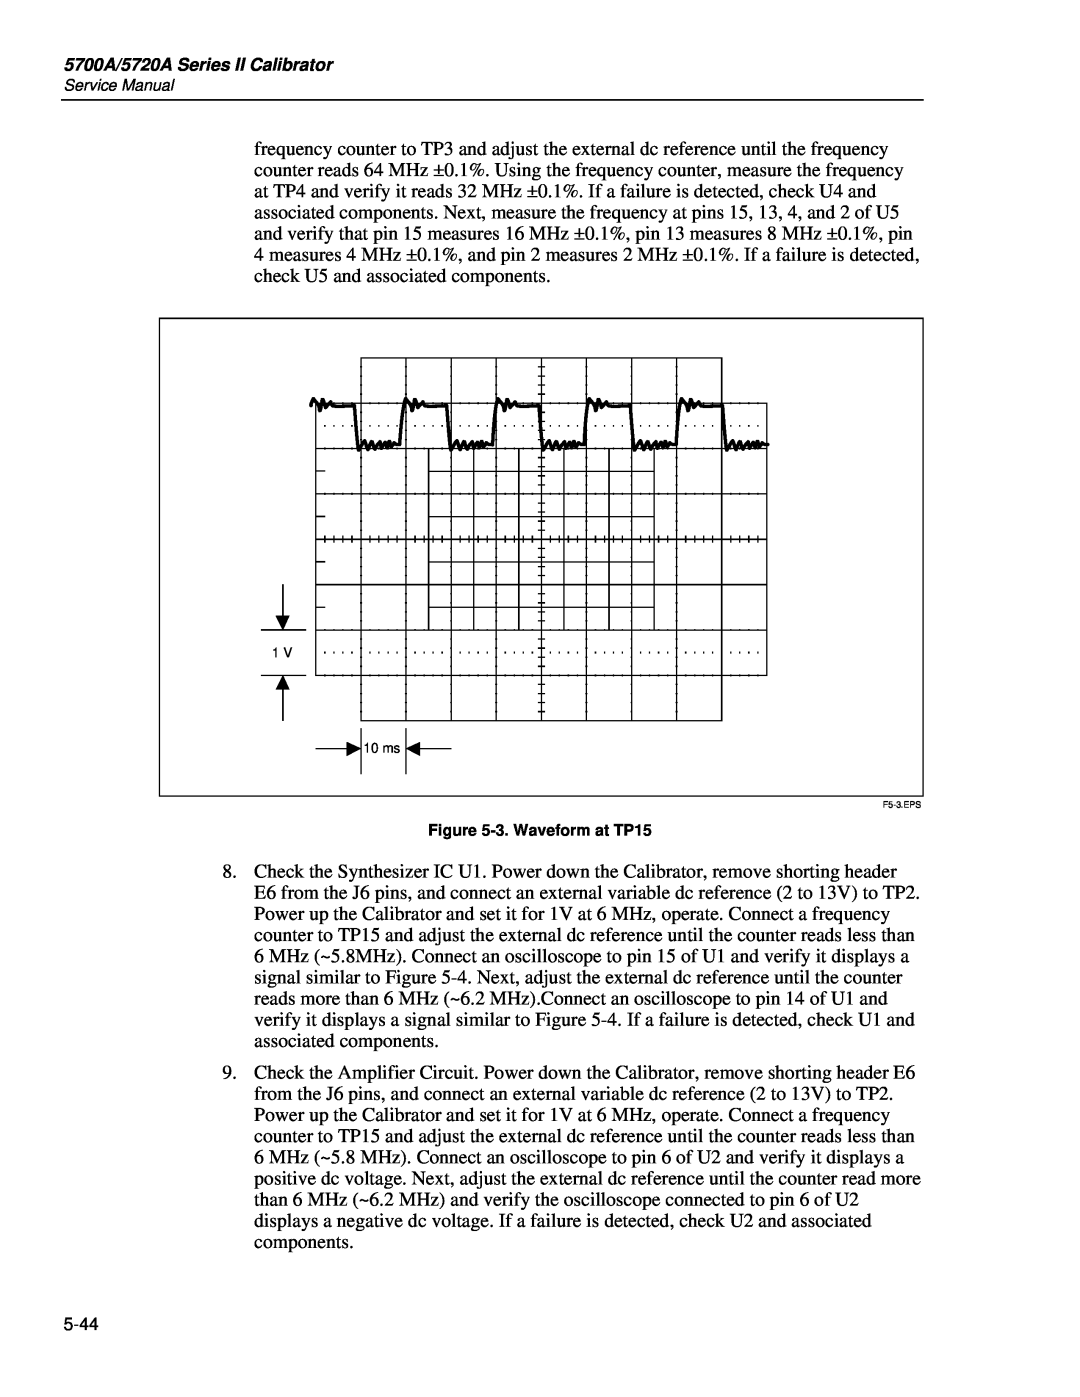 Fluke 5720A service manual 3. Waveform at TP15, F5-3.EPS 